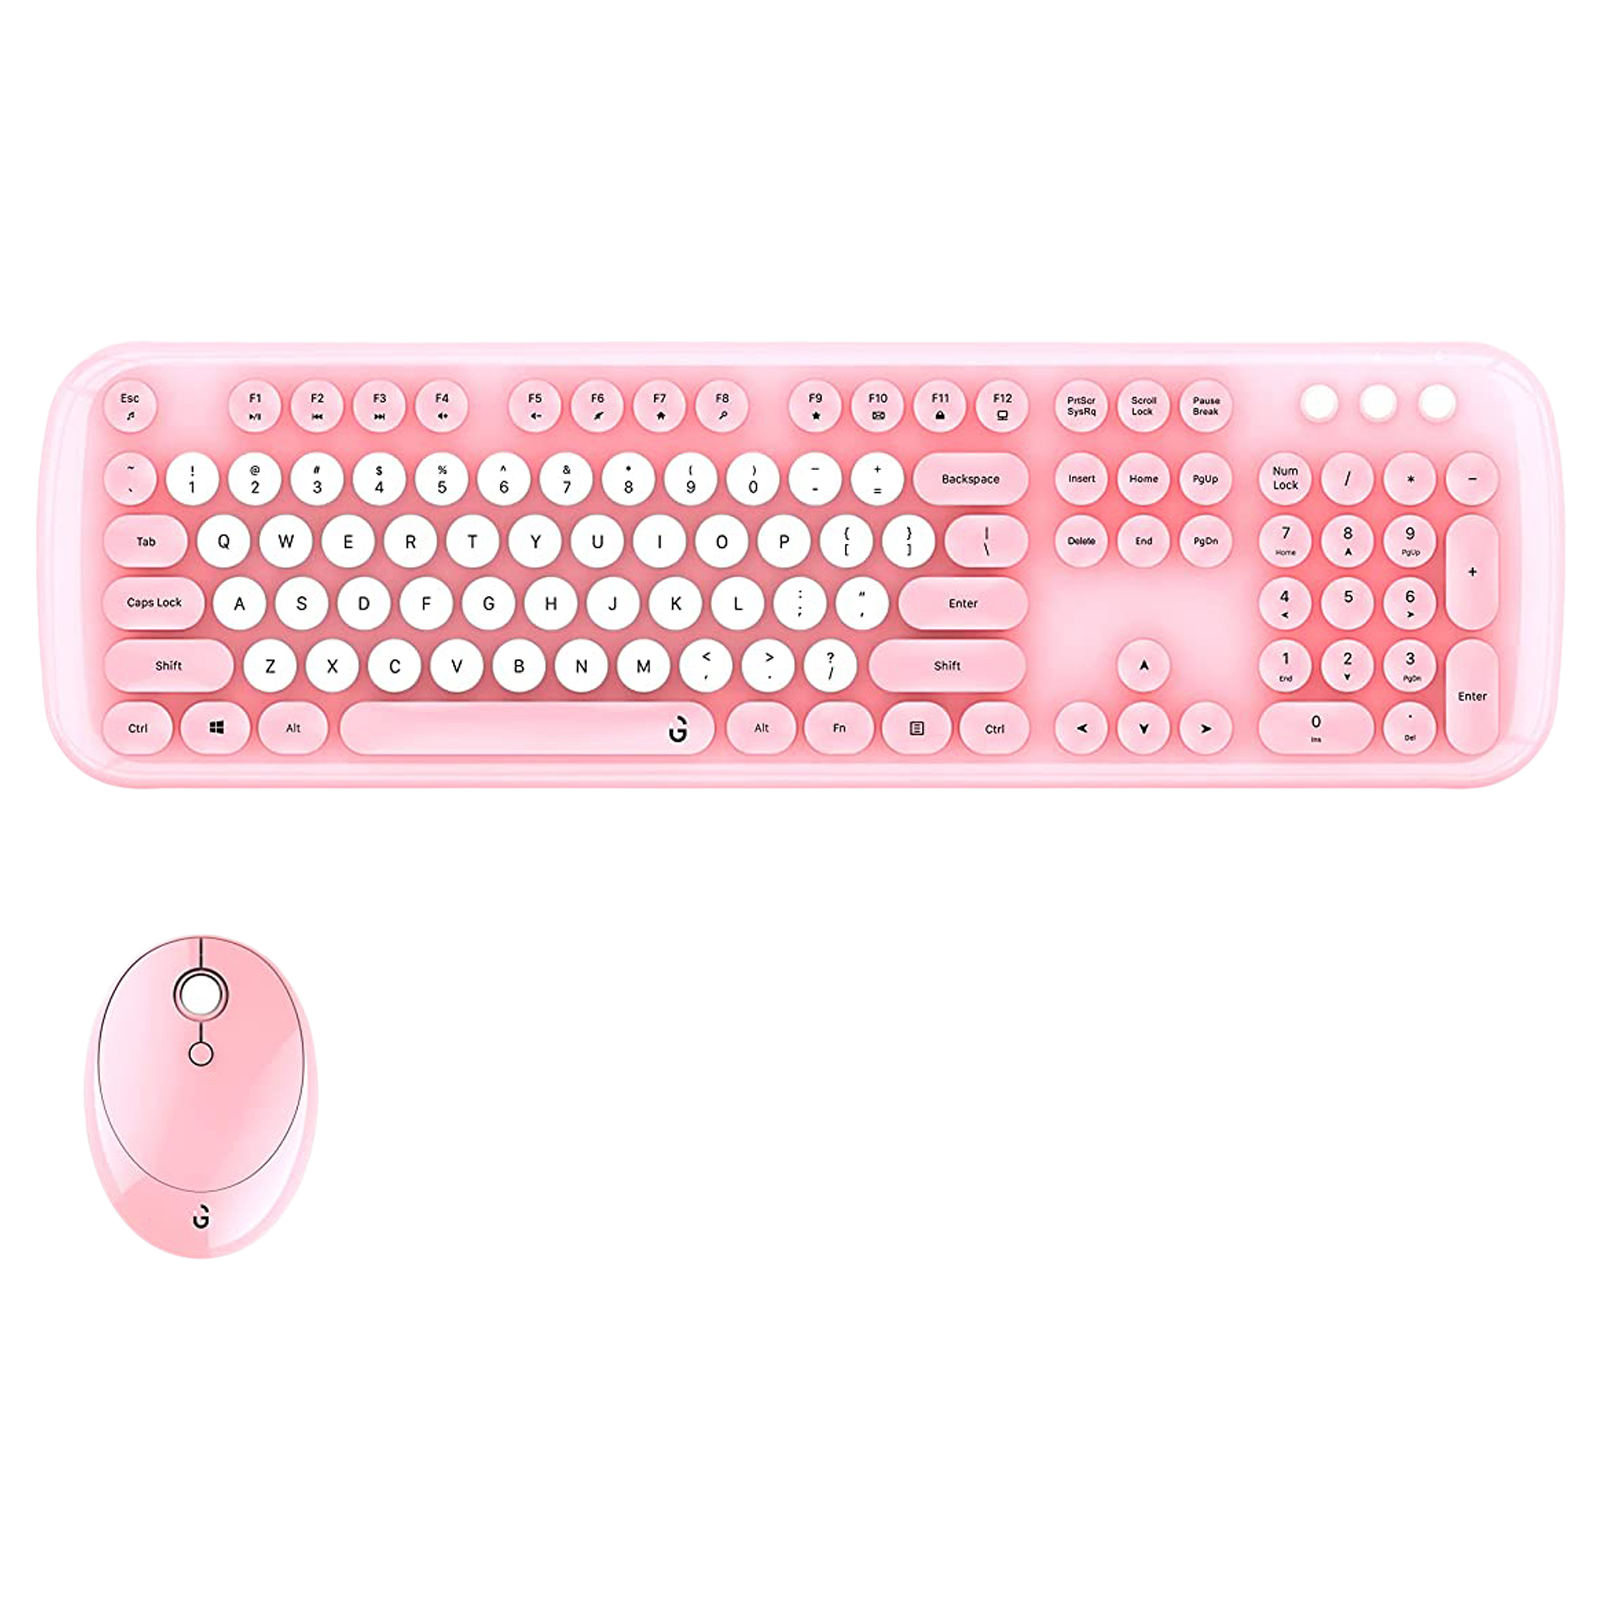 iGear KeyBee Pro Wireless Keyboard & Mouse Combo (104 Keys, 1600 DPI Adjustable, Removable Key Caps, Pink)_1